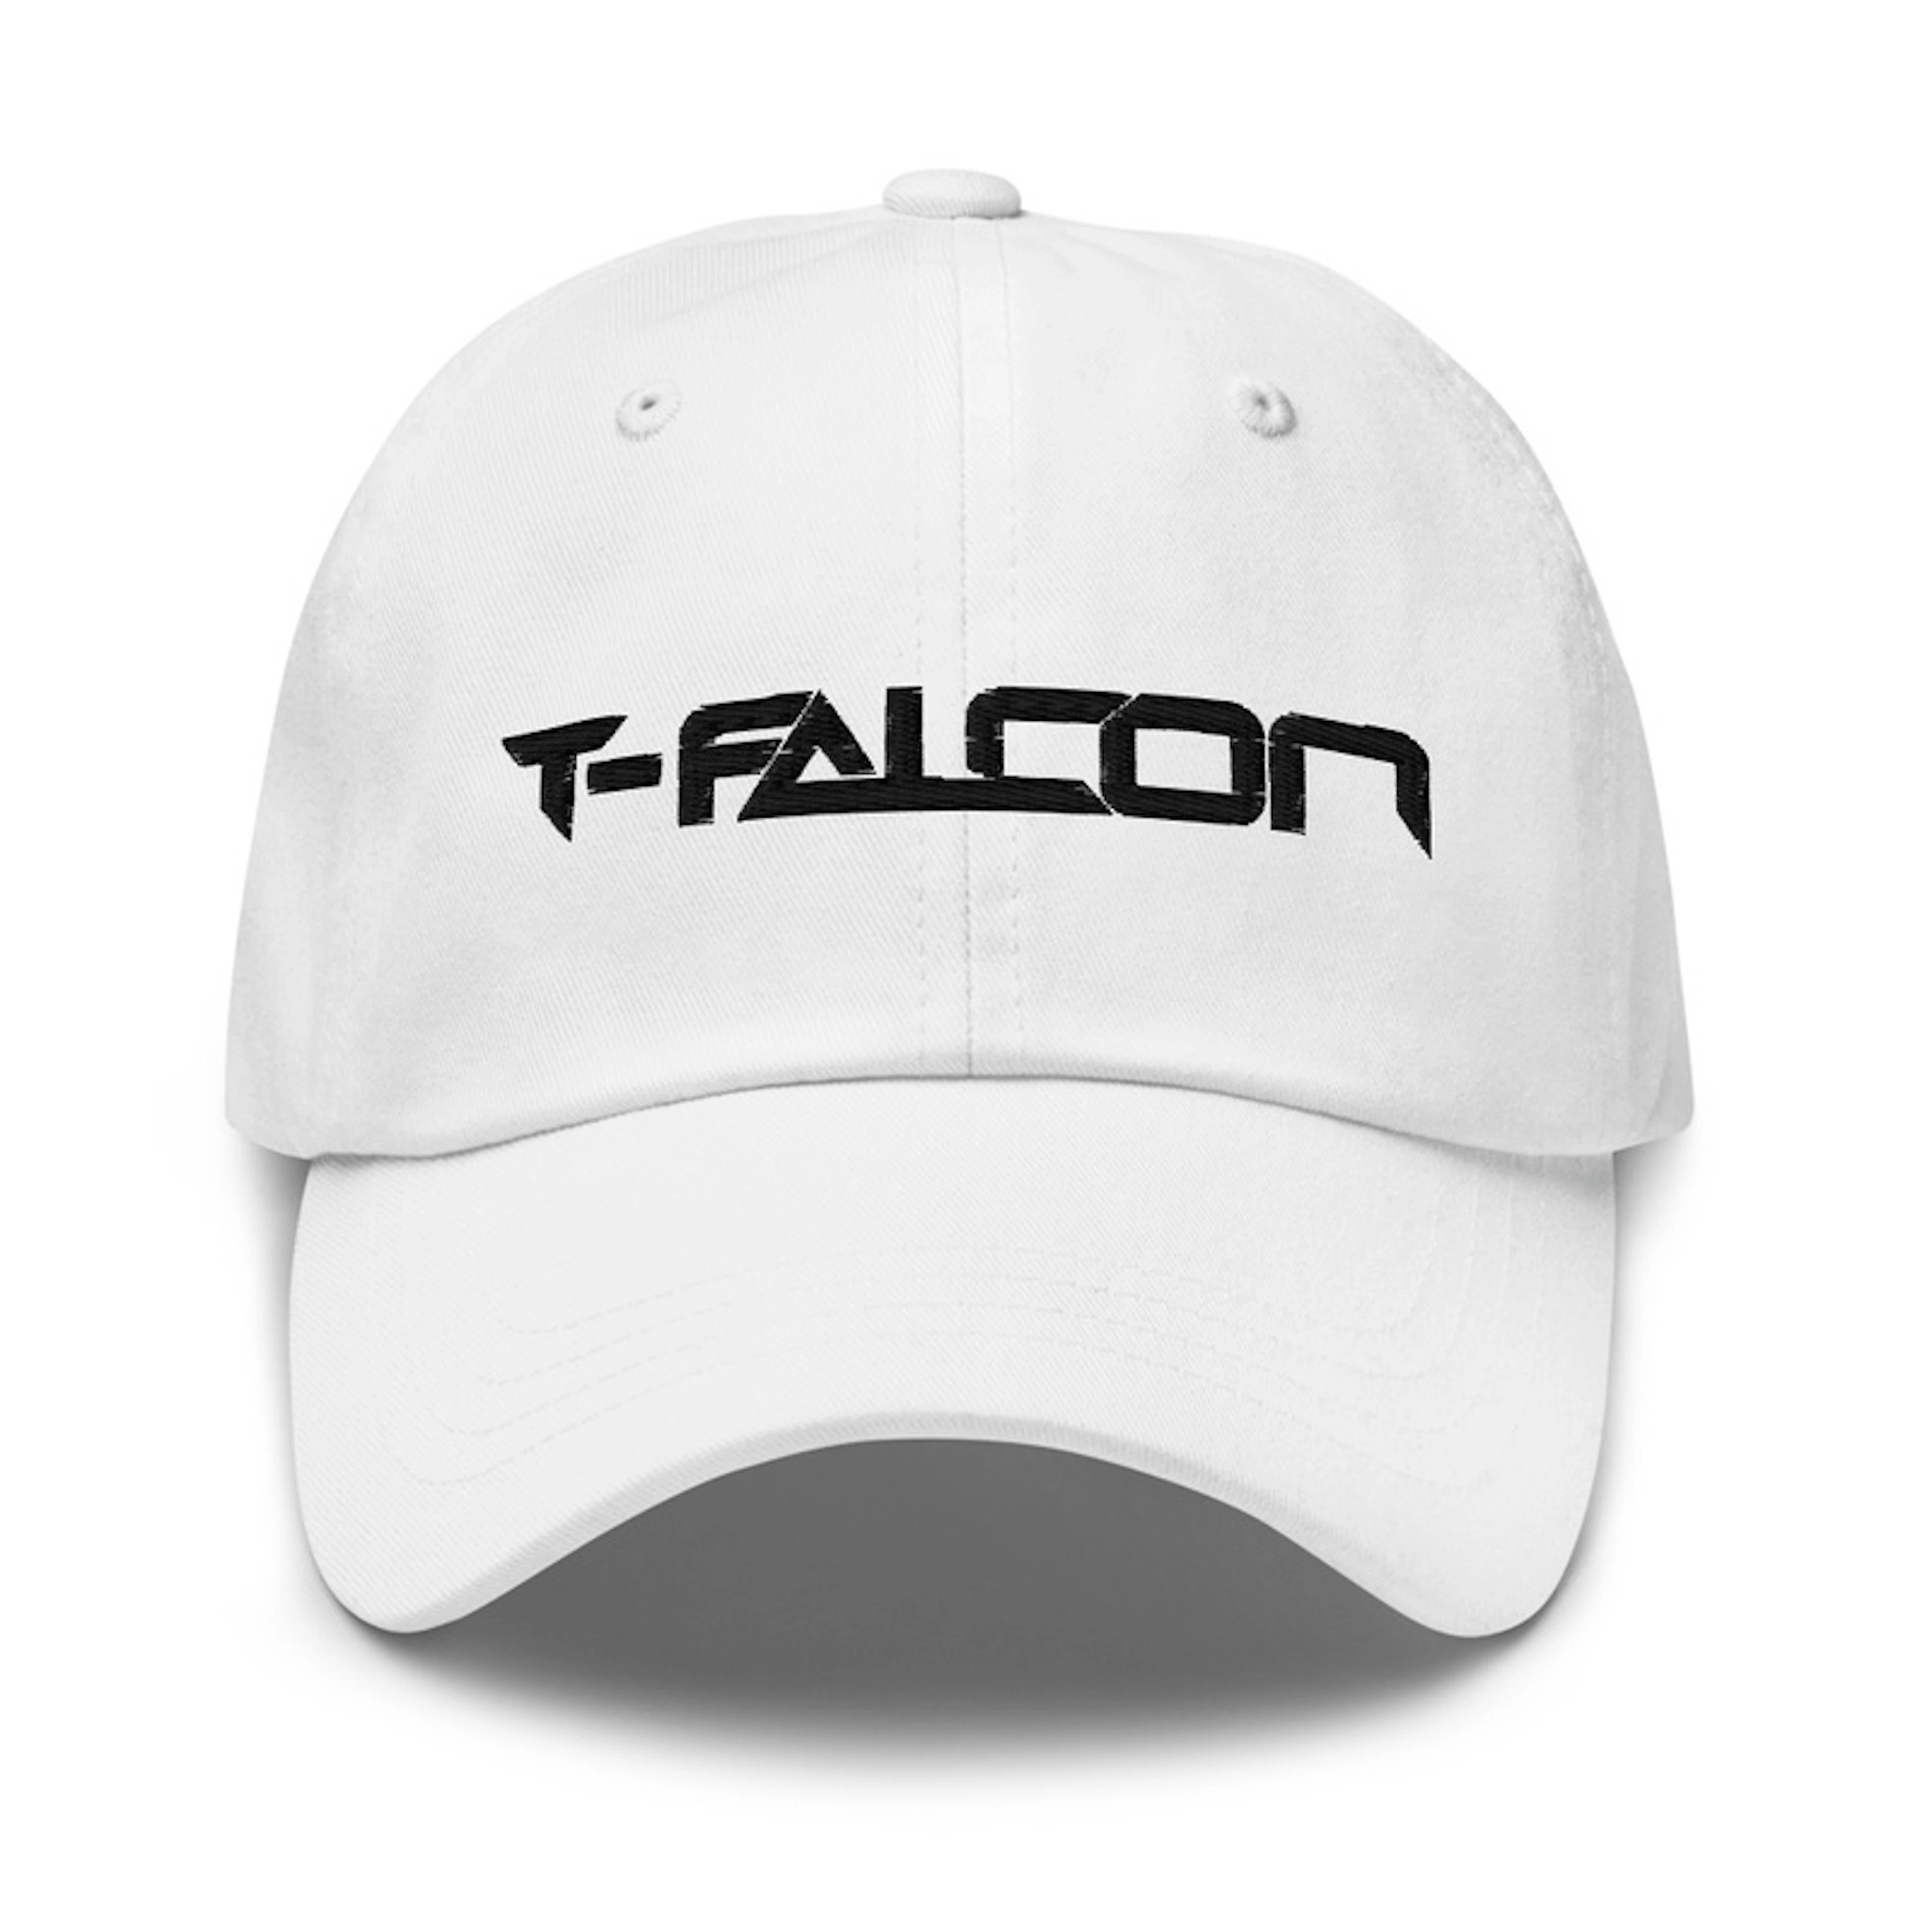 T-FALCON BLACK ON WHITE TEXT LOGO CAP